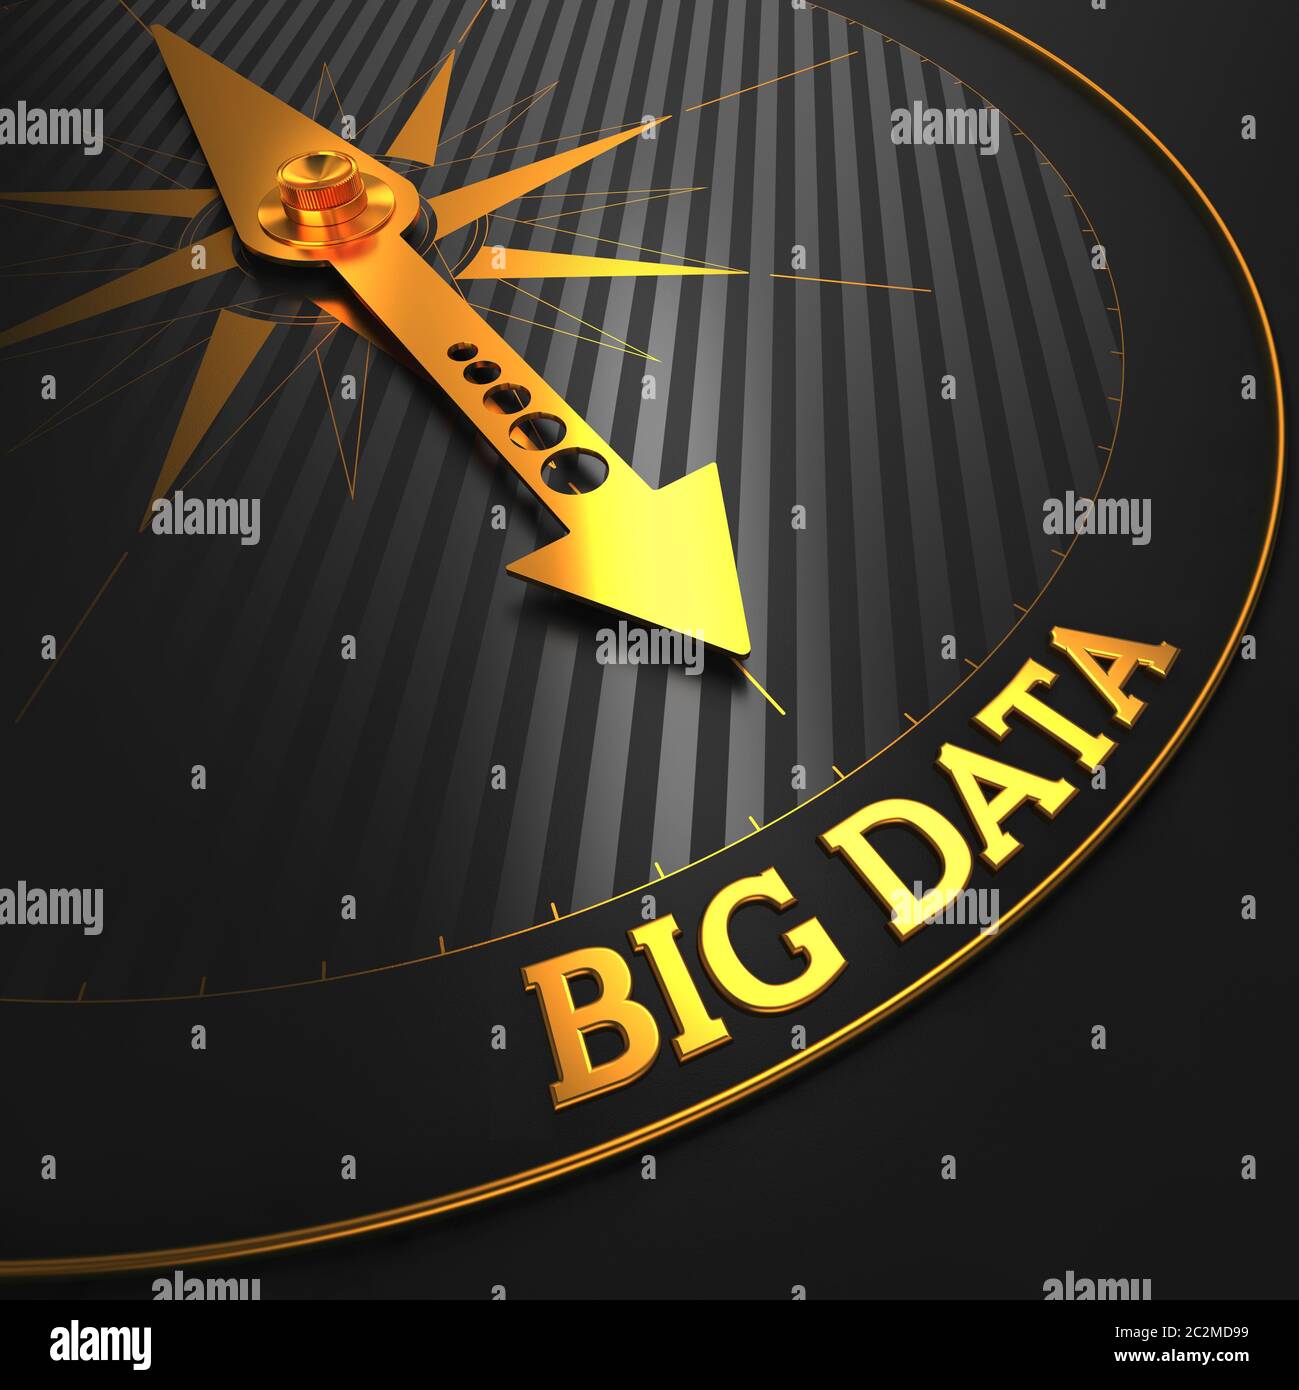 Big Data-Konzept. Goldene Kompassnadel auf einem schwarzen Feld, das auf die Worte „Big Data“ verweist. Stockfoto